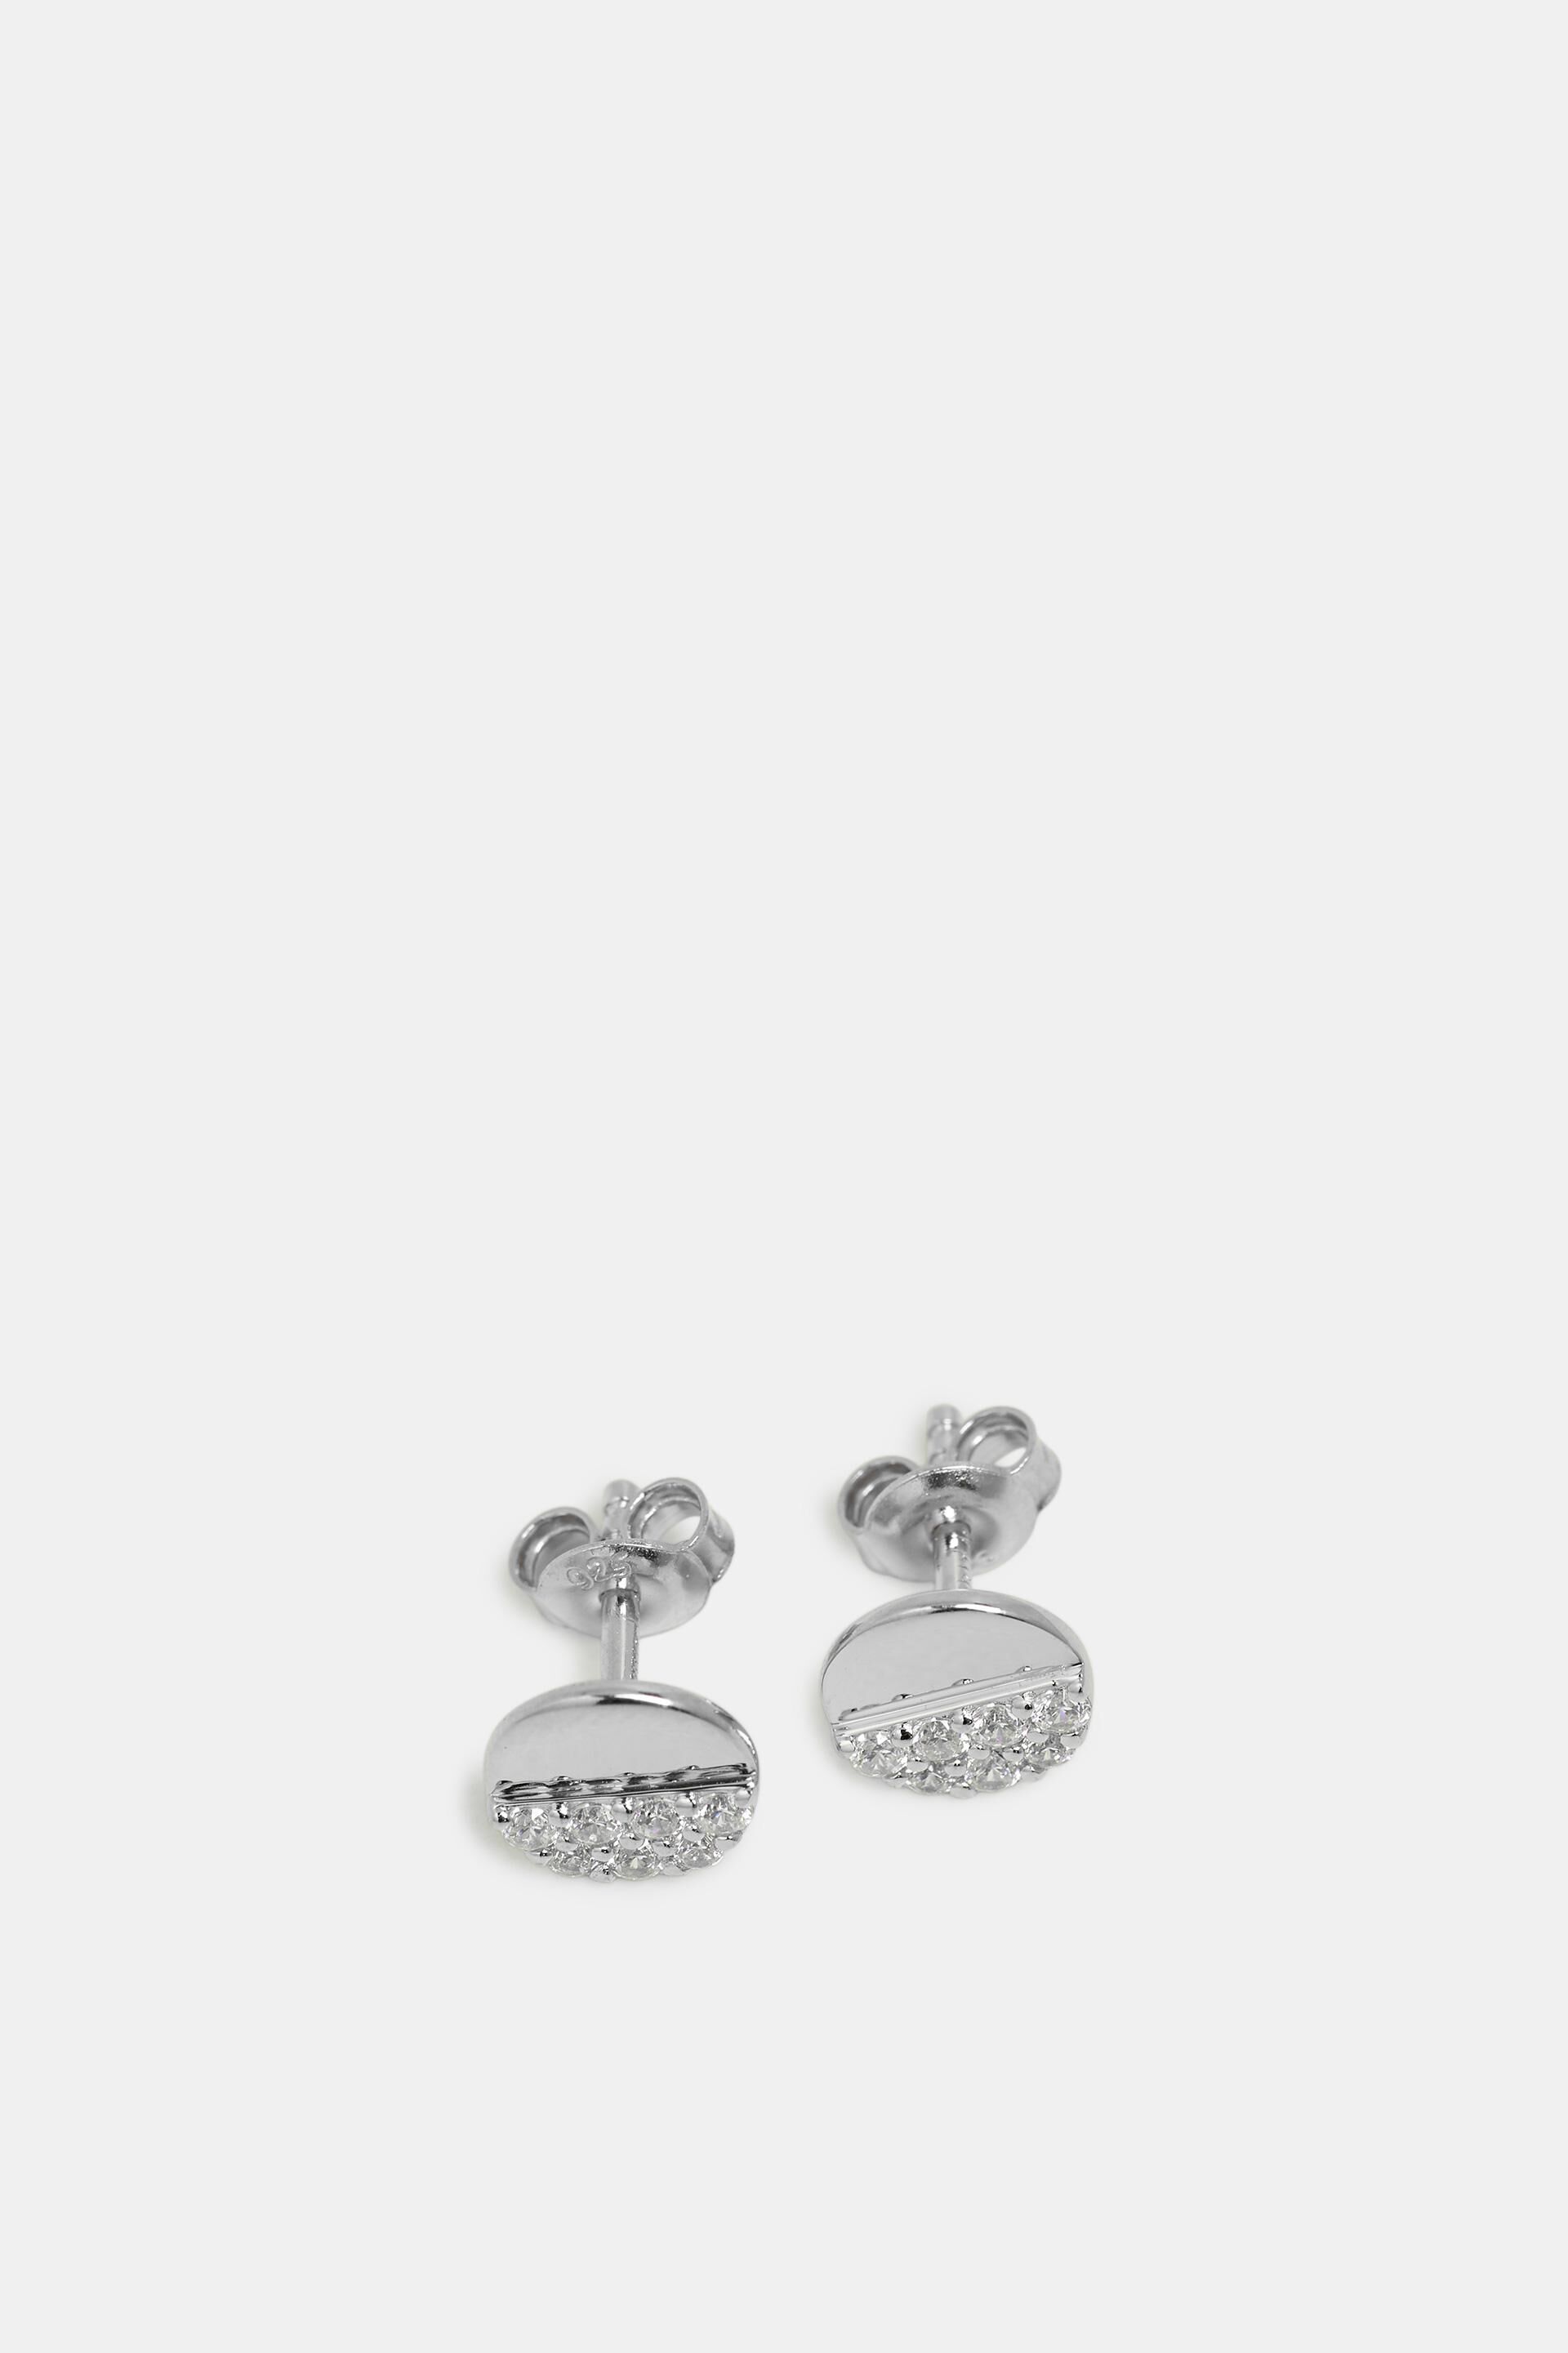 ESPRITESPRIT Charm – Ciondolo da donna Playful Love in argento 925 rodiato con zirconi trasparenti – ESCH91598D000 Marca 